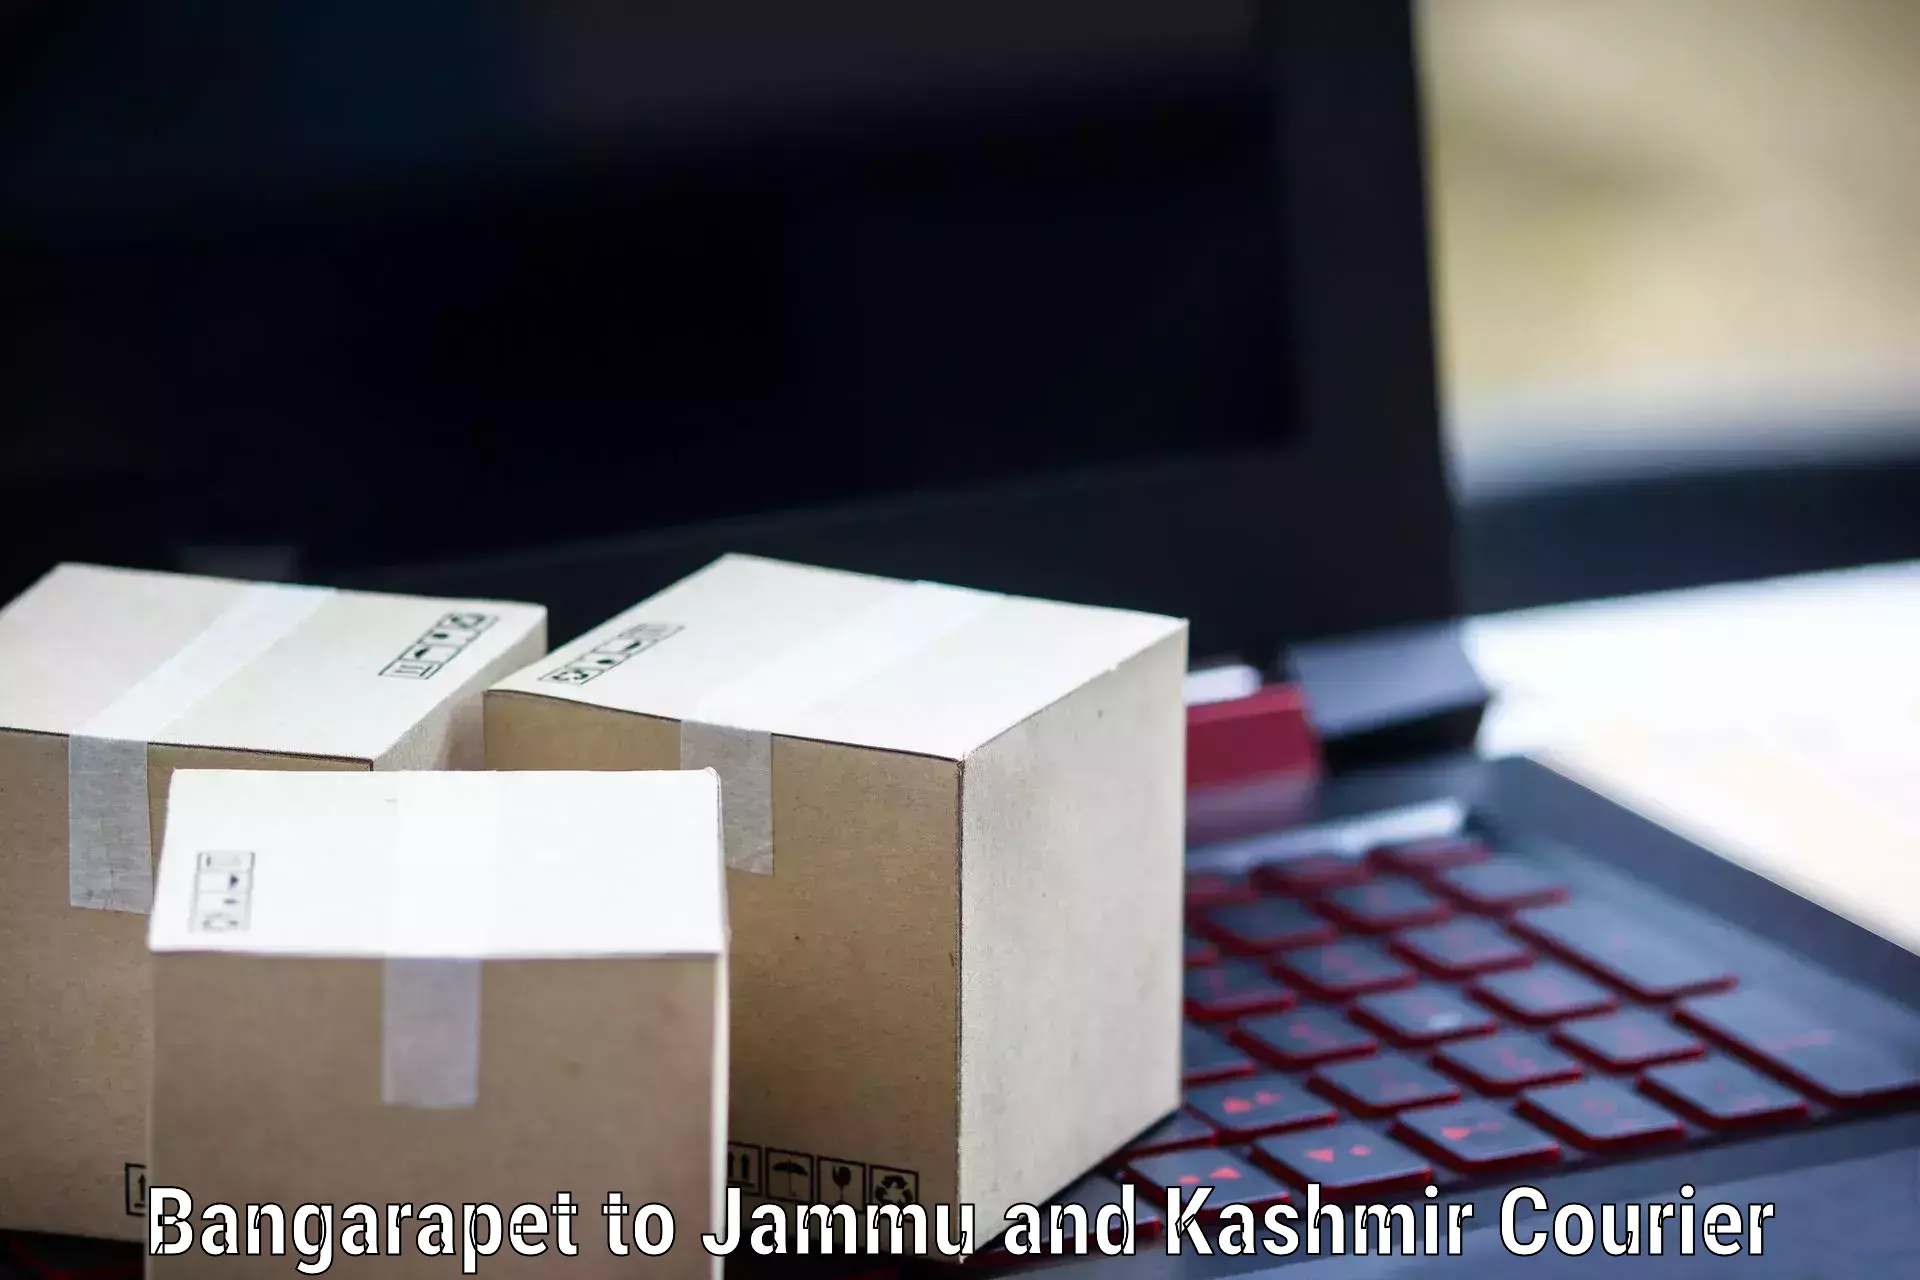 Doorstep delivery service Bangarapet to IIT Jammu